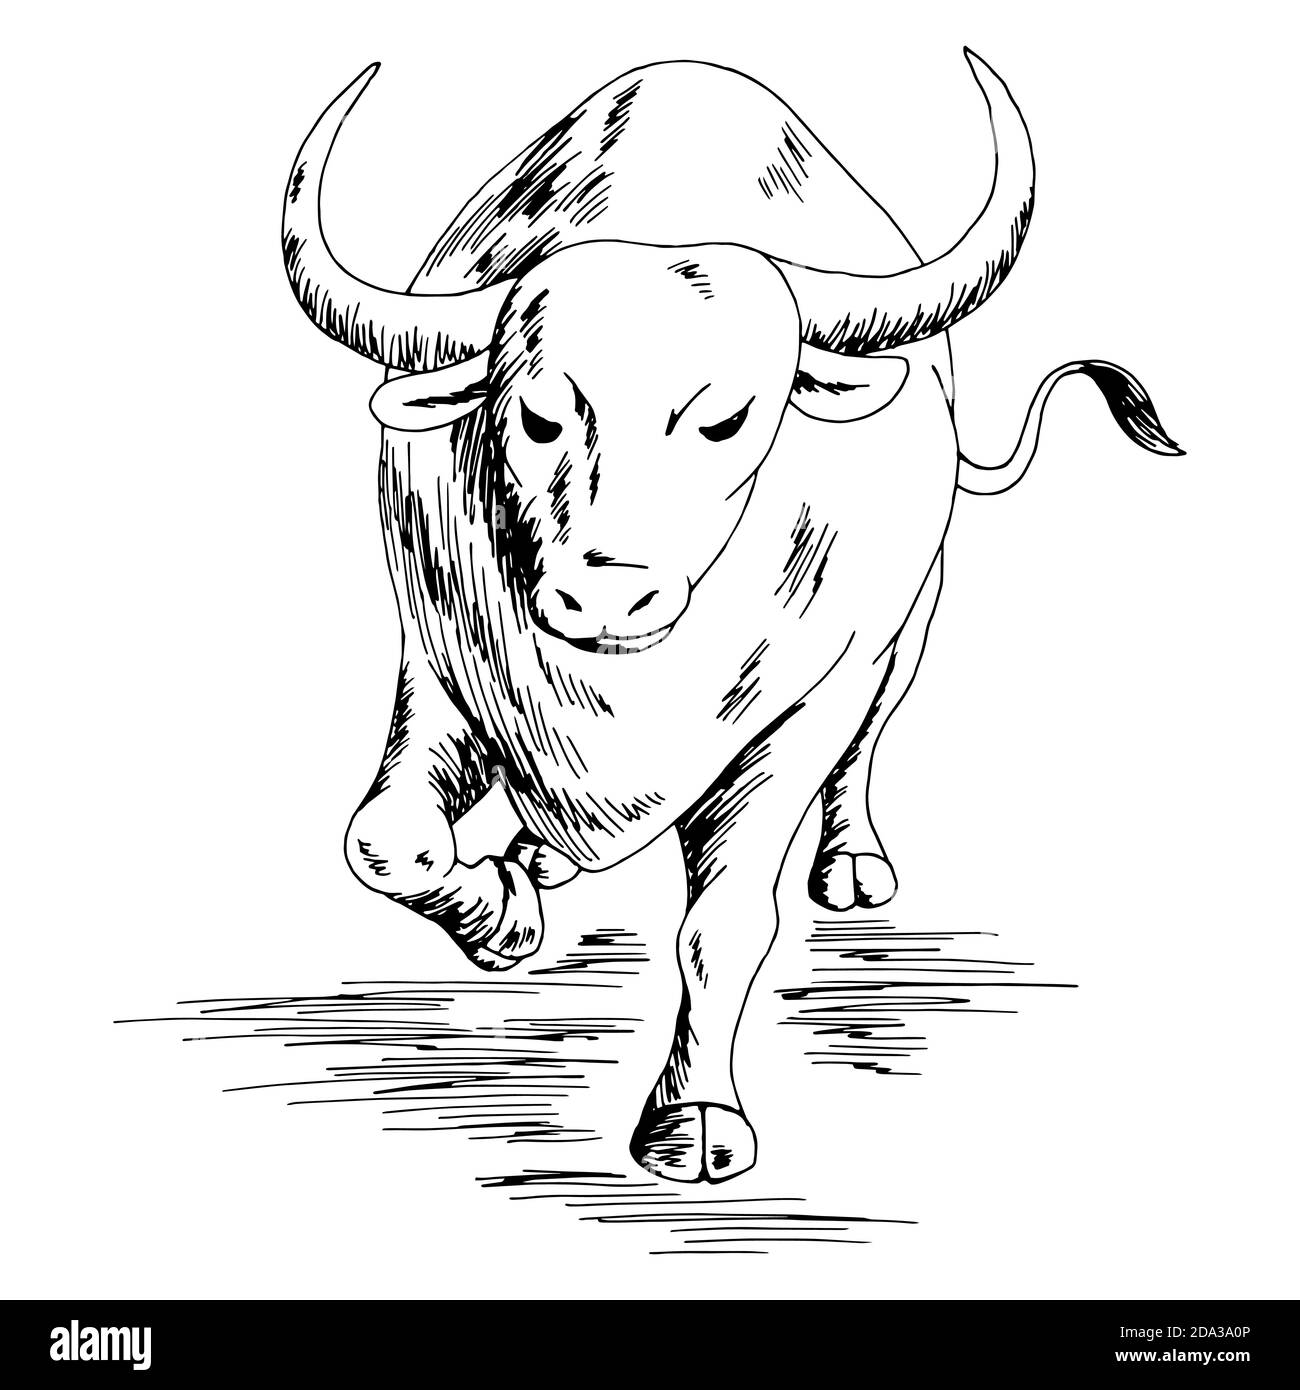 Bull arrabbiato running grafico nero bianco isolato illustrazione vettore di schizzo Illustrazione Vettoriale